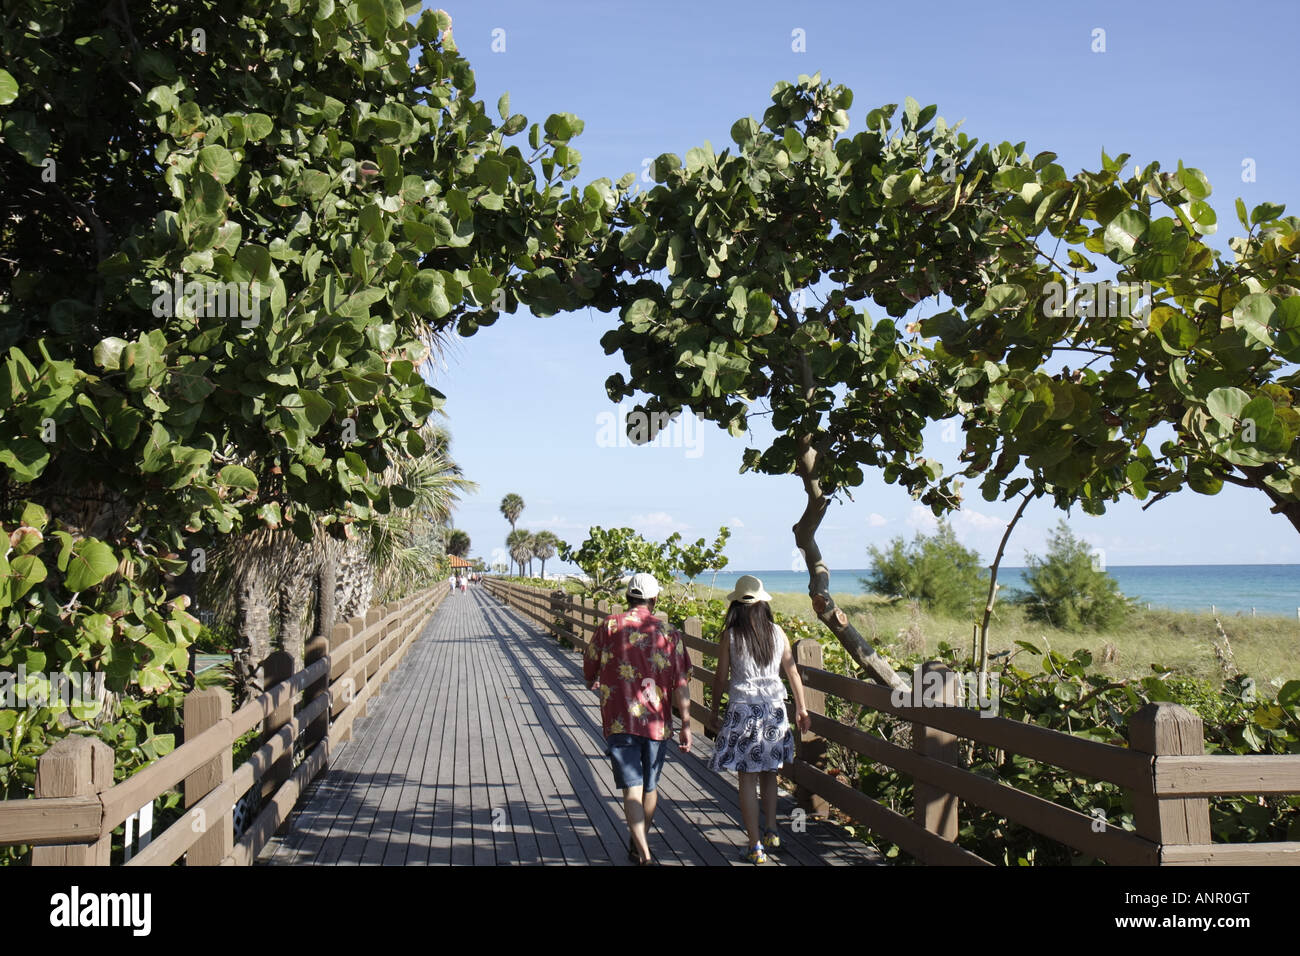 Miami Beach Florida, littoral de l'océan Atlantique, promenade, couple de marche, raisin de mer, FL071227010 Banque D'Images